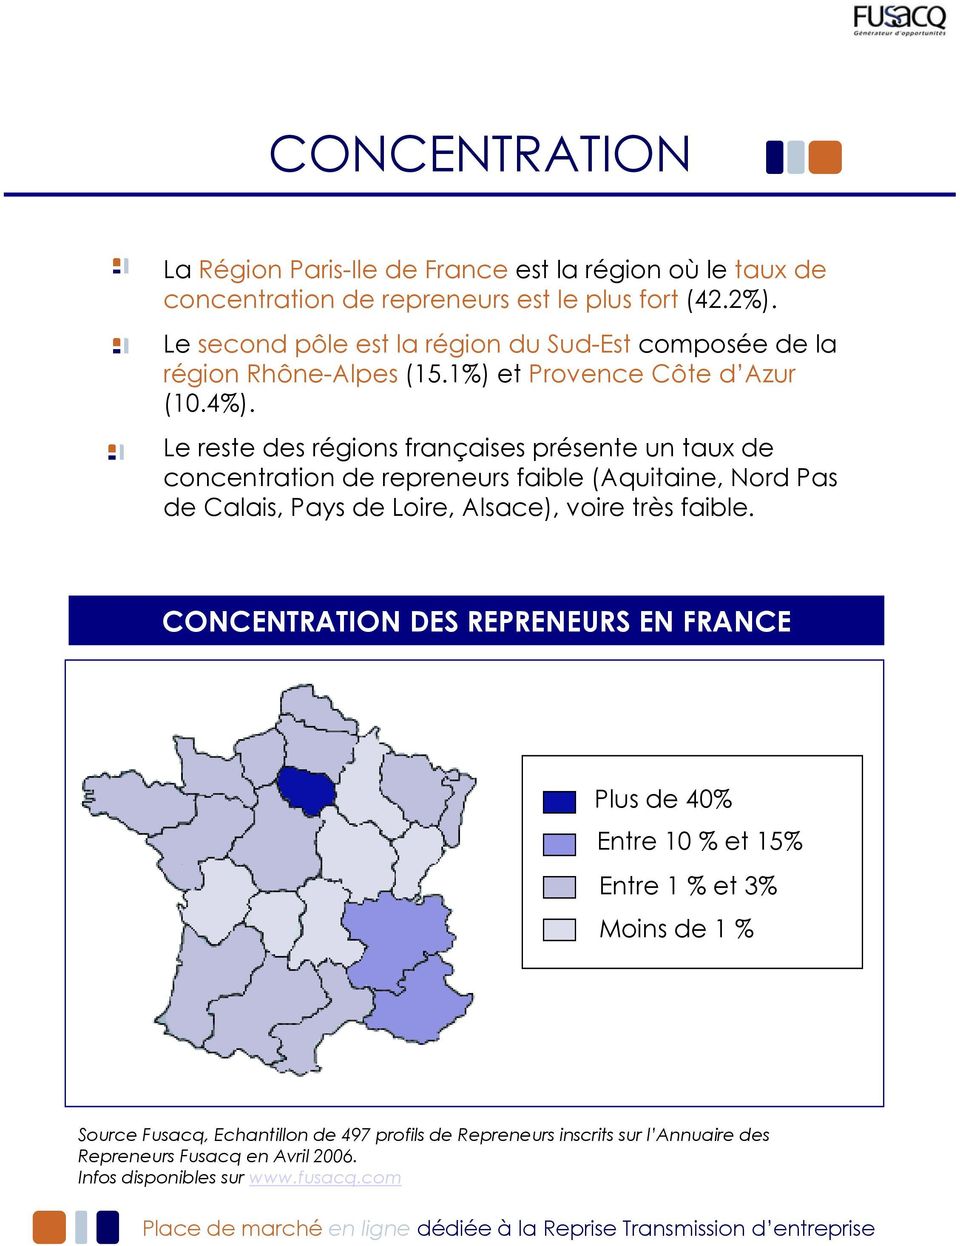 Le reste des régions françaises présente un taux de concentration de repreneurs faible (Aquitaine, Nord Pas de Calais, Pays de Loire, Alsace), voire très faible.